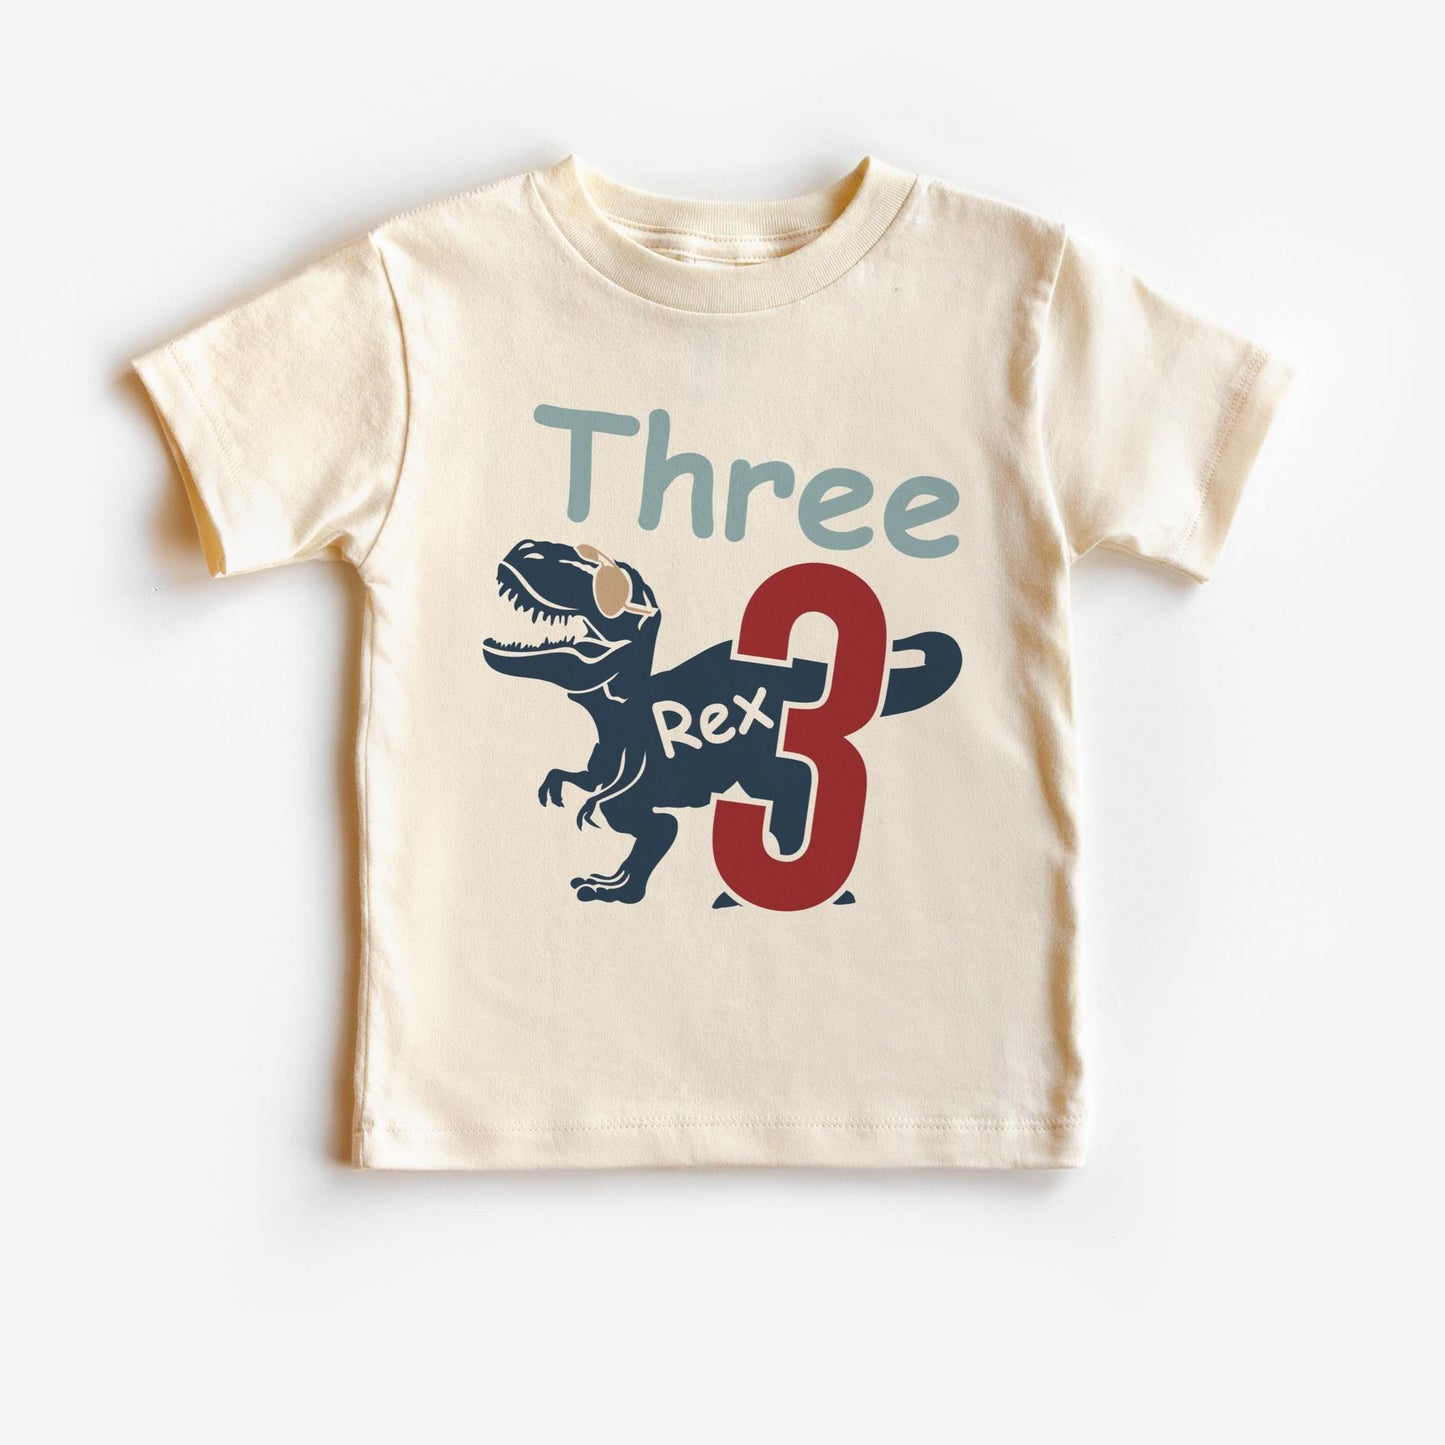 Three Rex T-shirt